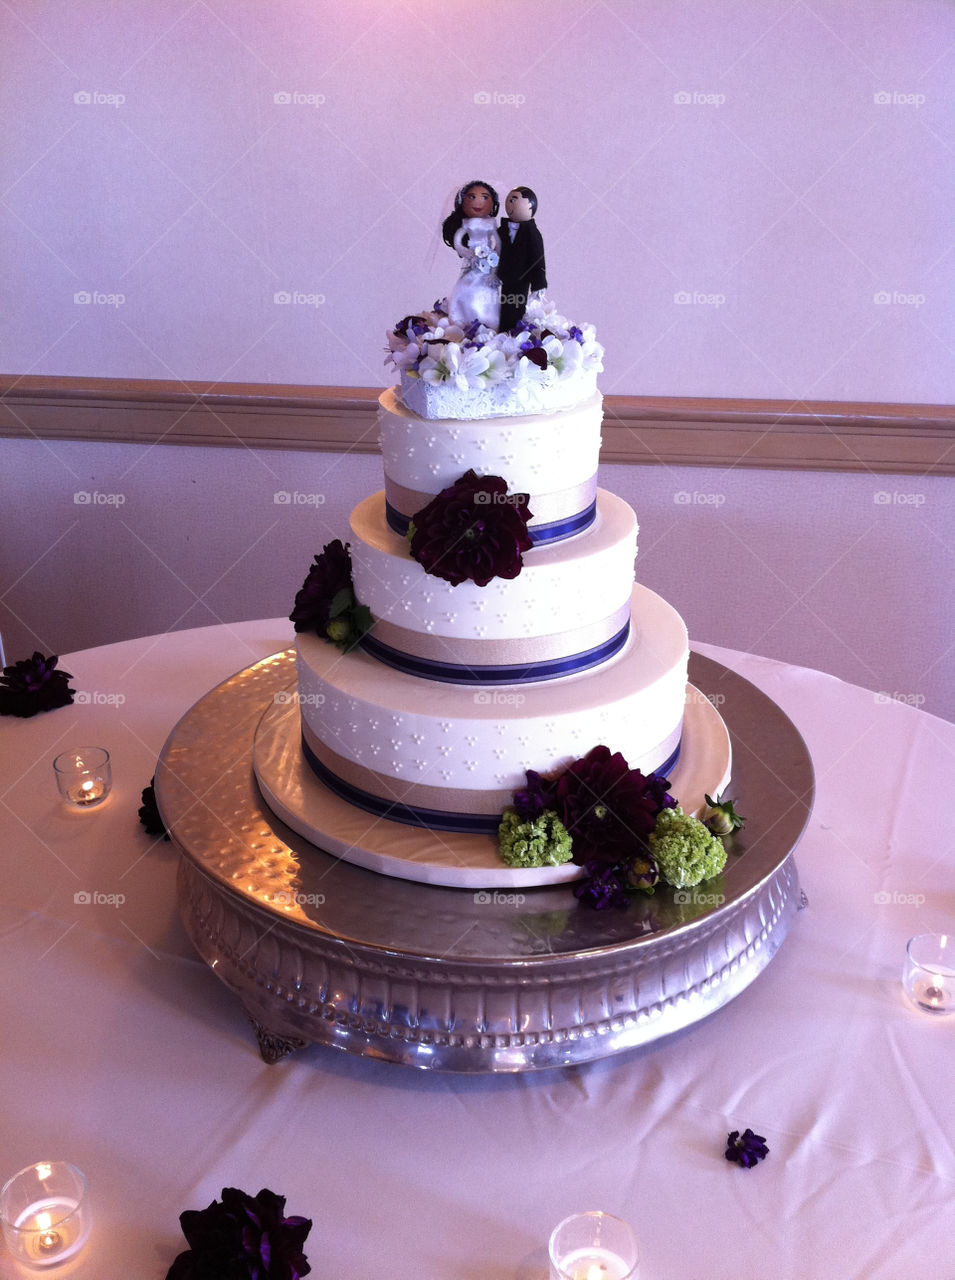 italy cake wedding marriage by webtaskic